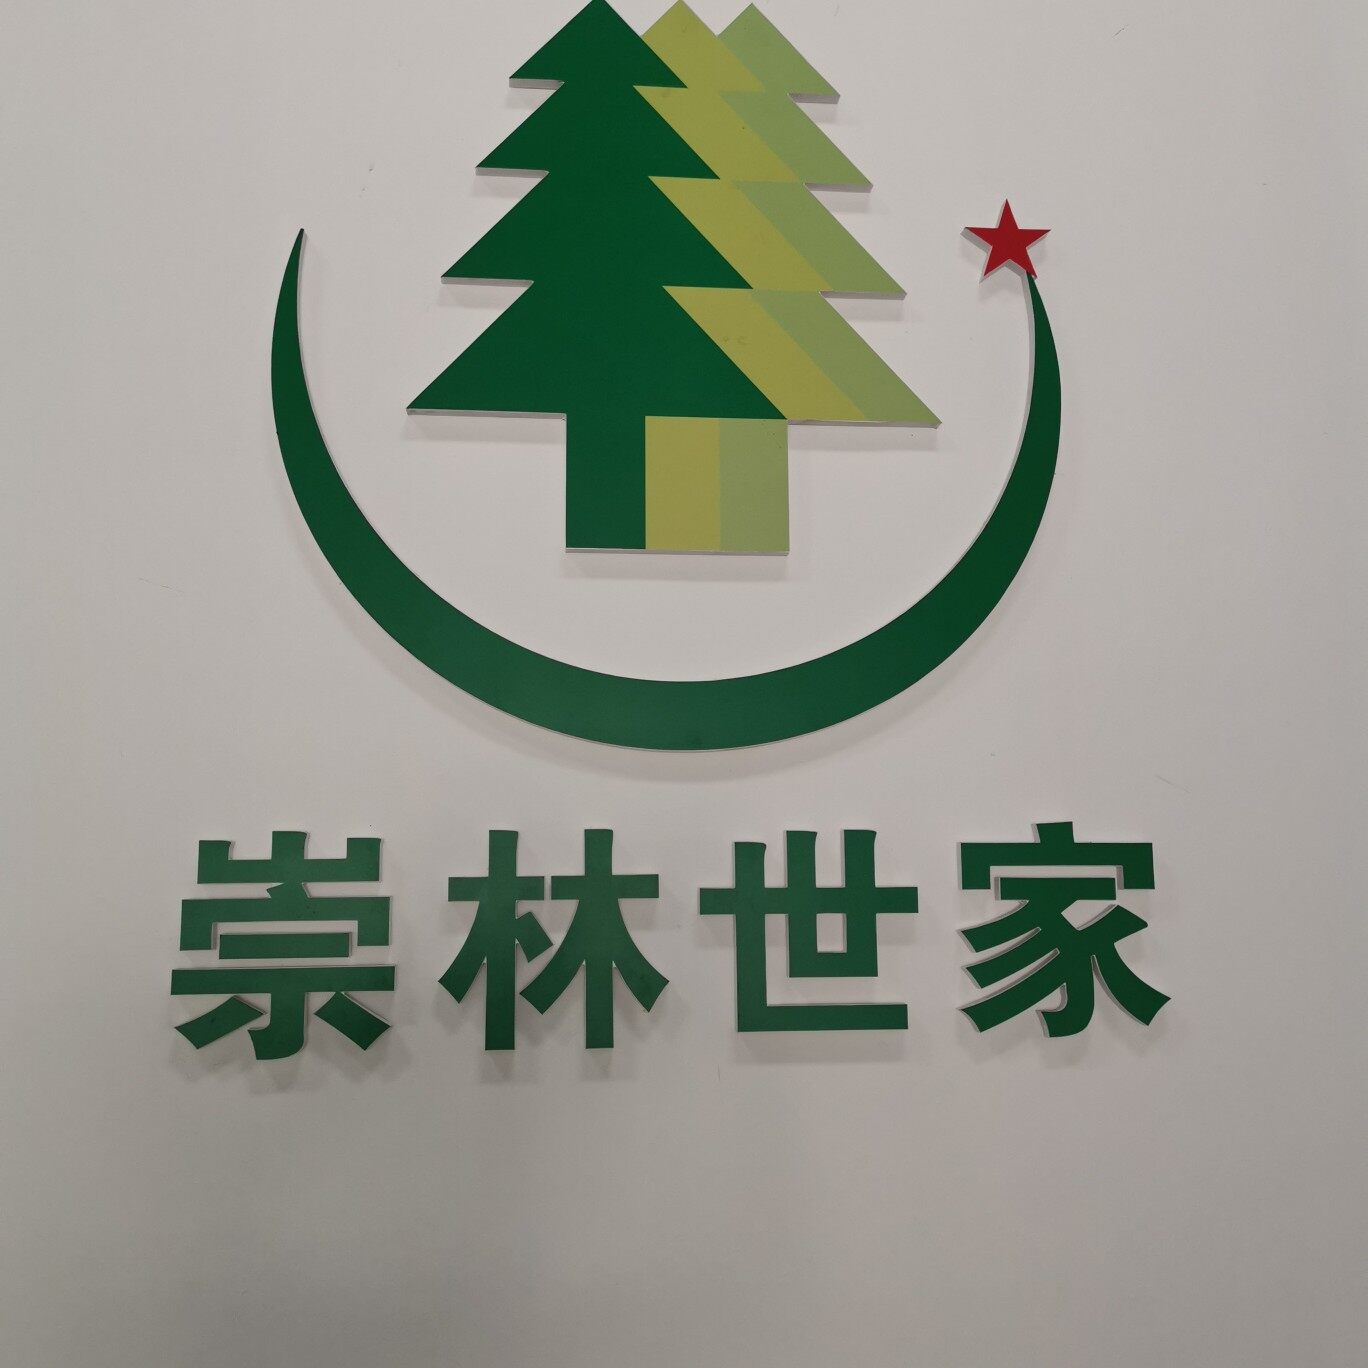 中山市崇林世家汽车销售服务有限公司logo